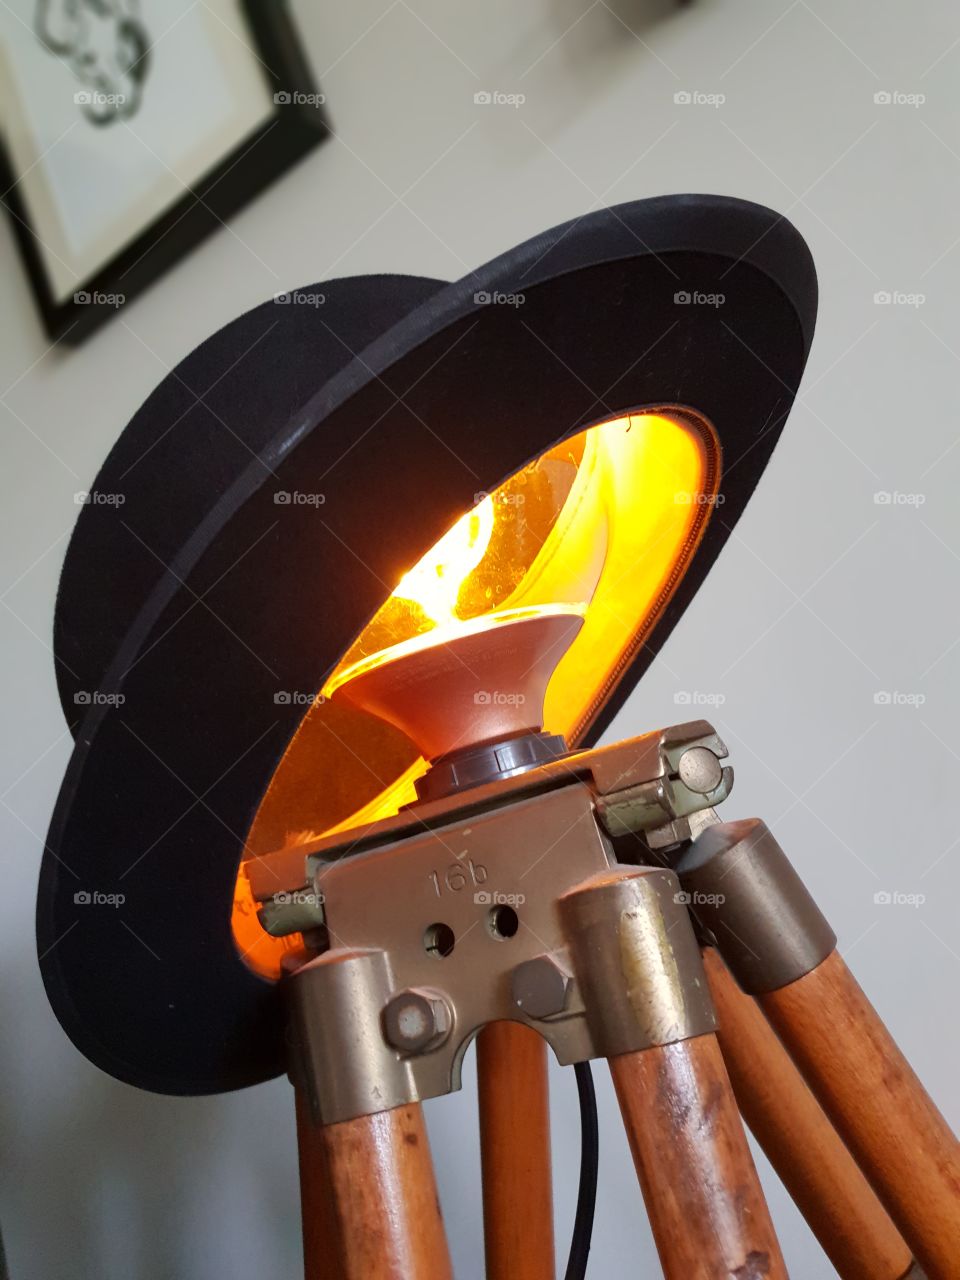 Bowler hat light installation